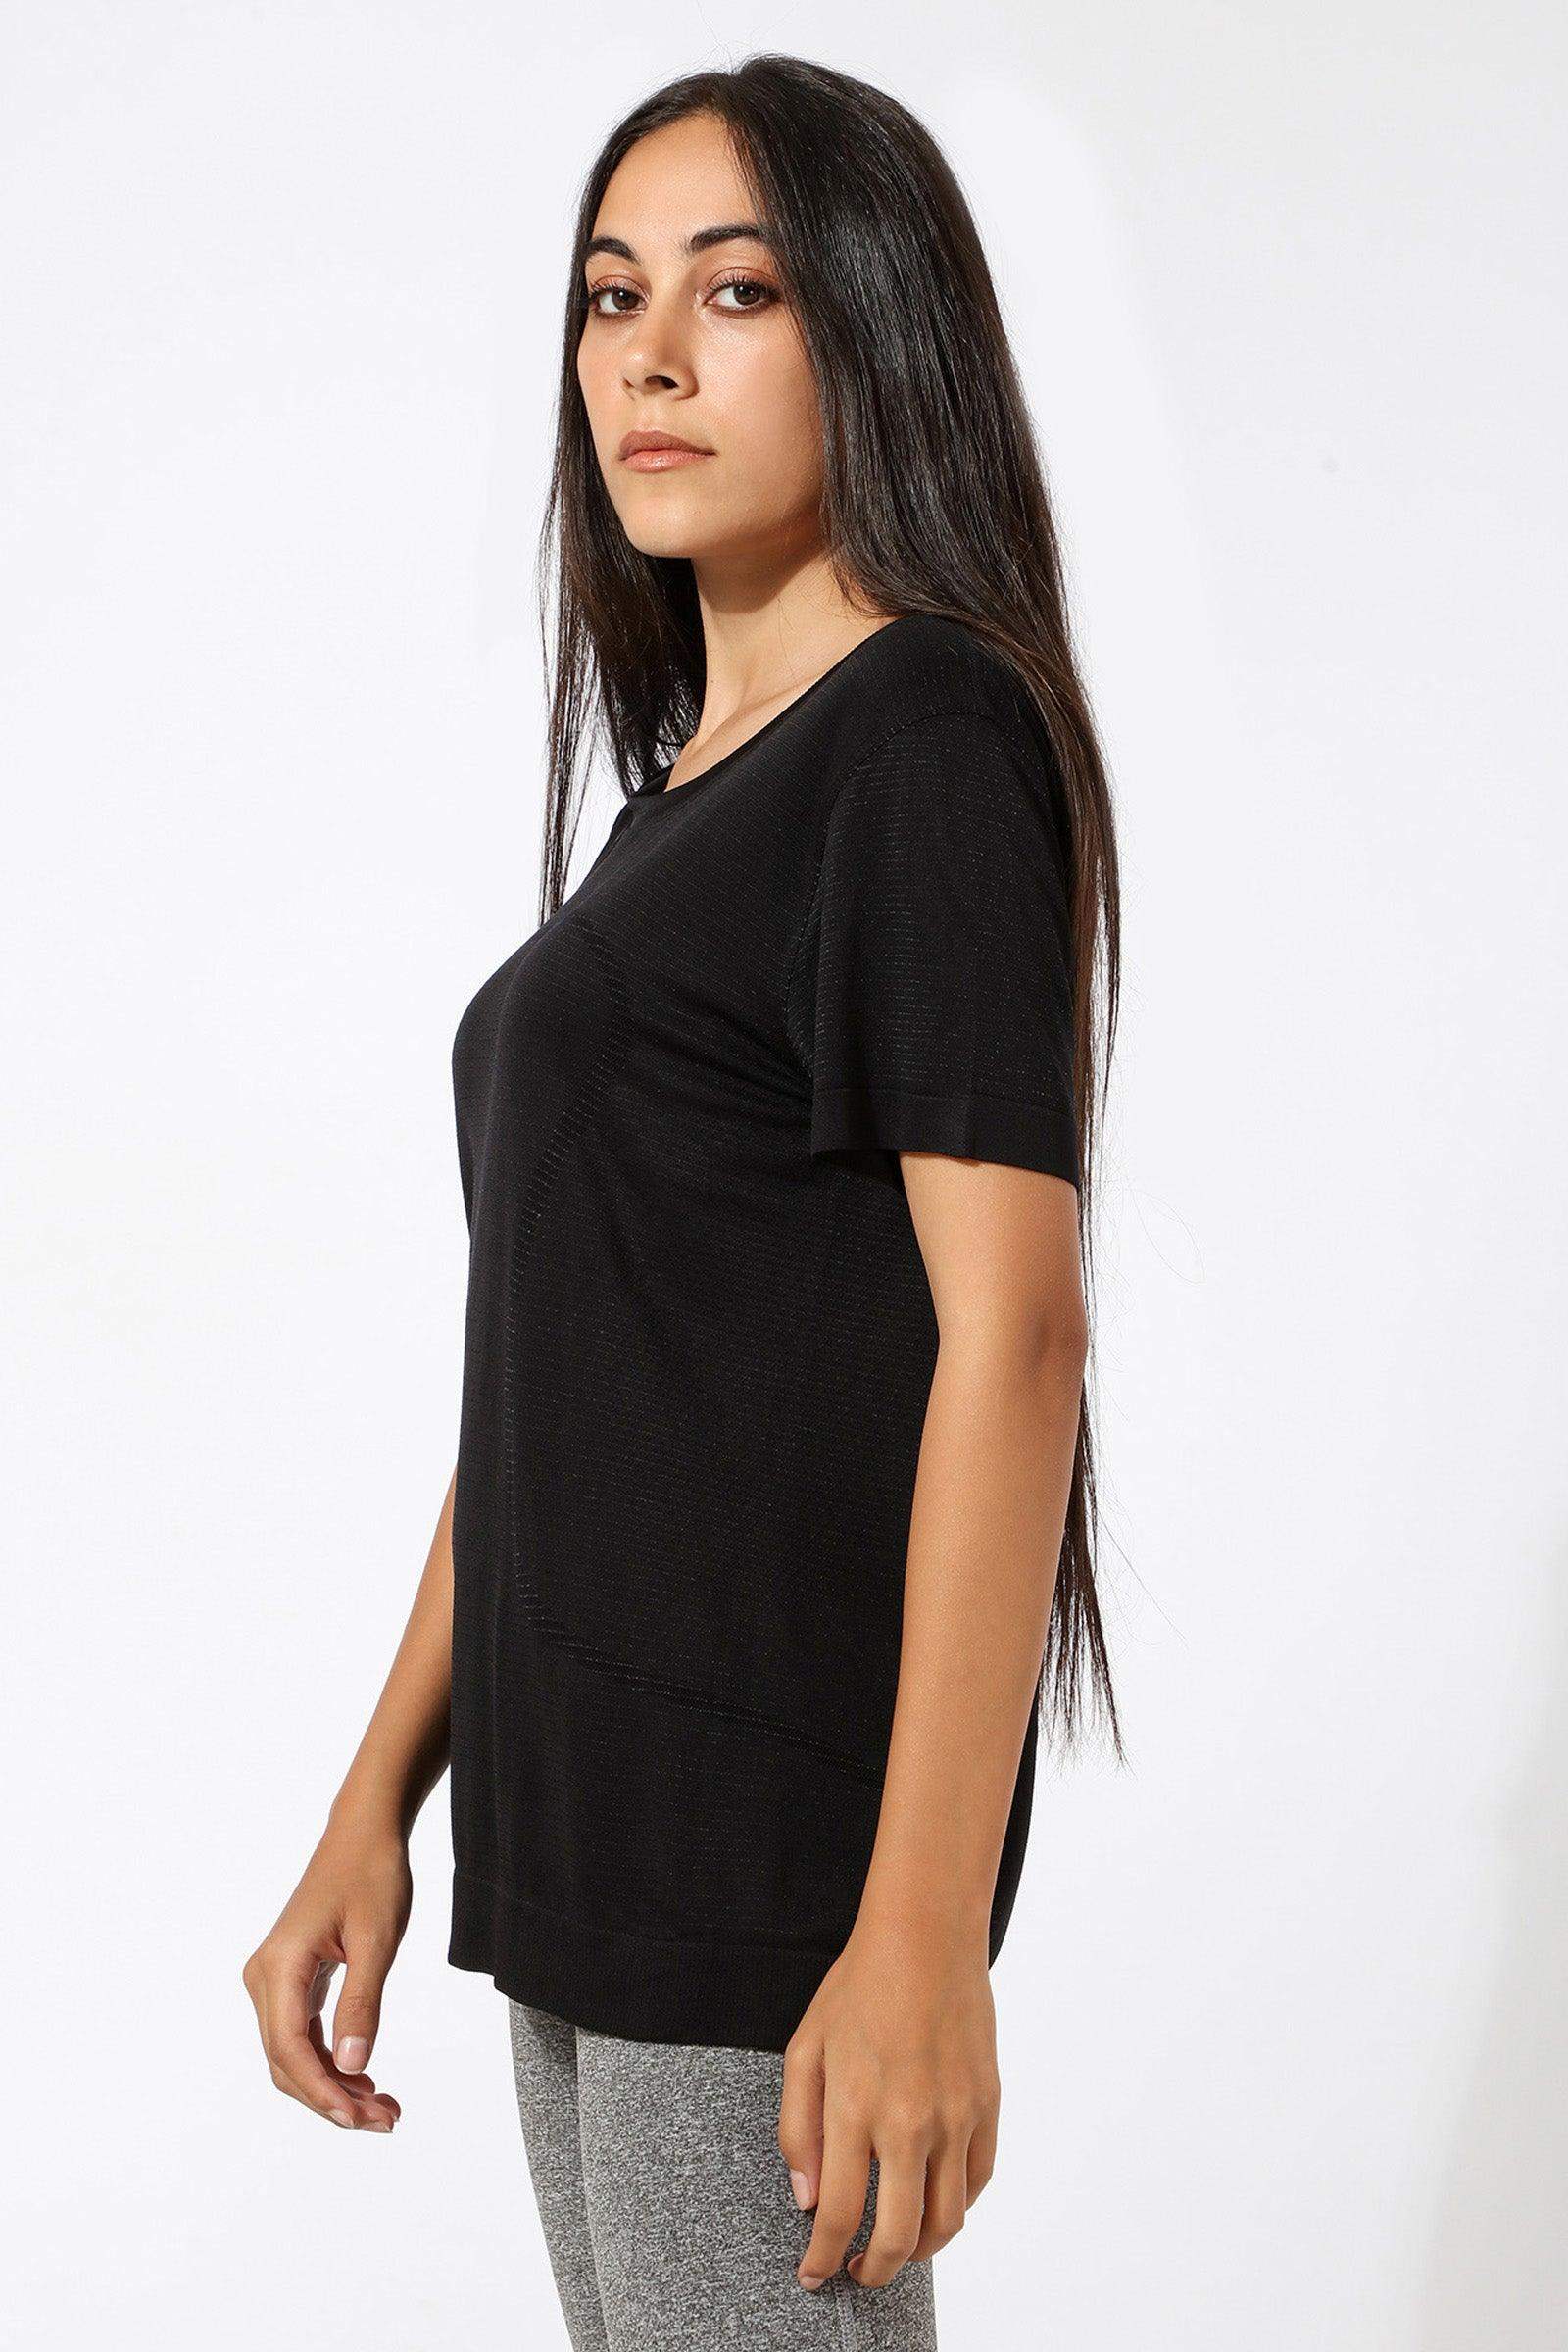 Polyester Self Pattern T-shirt - Carina - كارينا